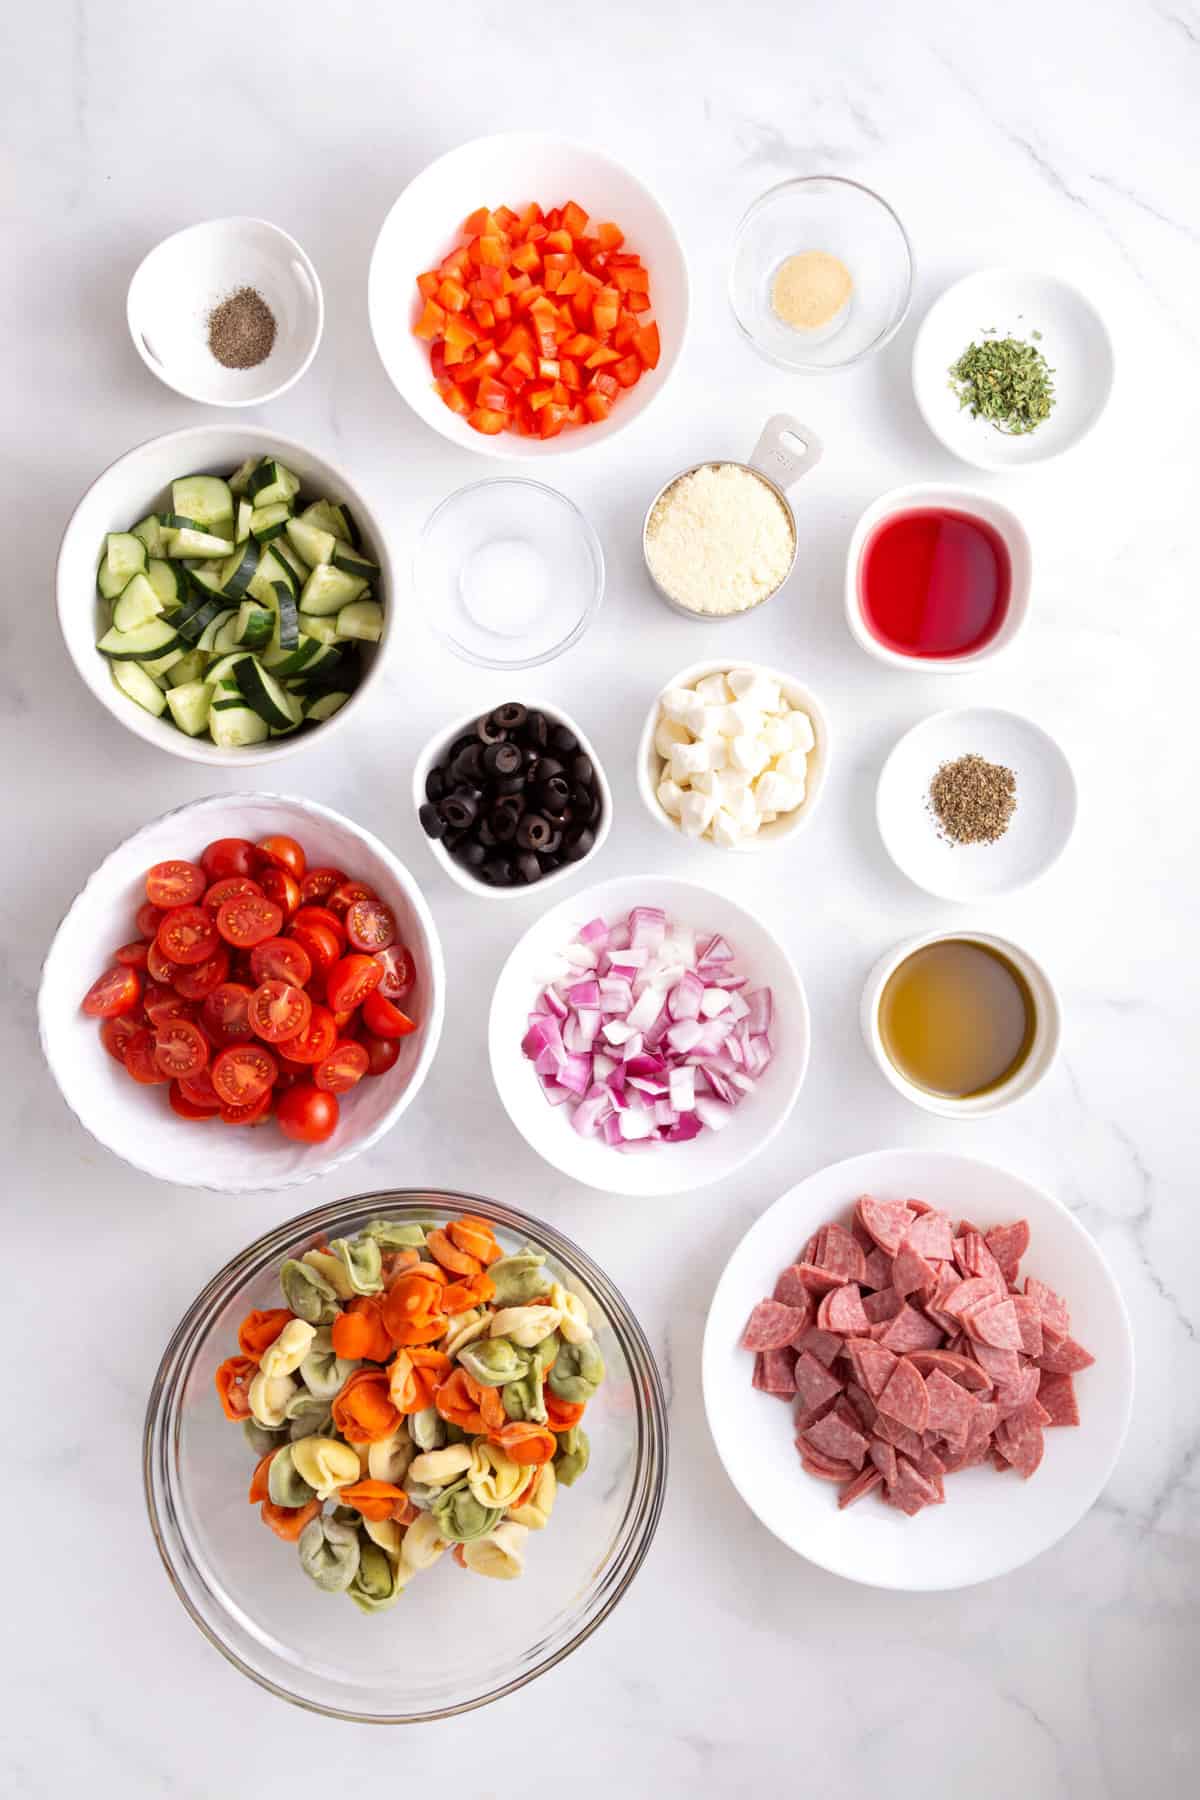 ingredients to make tortellini pasta salad